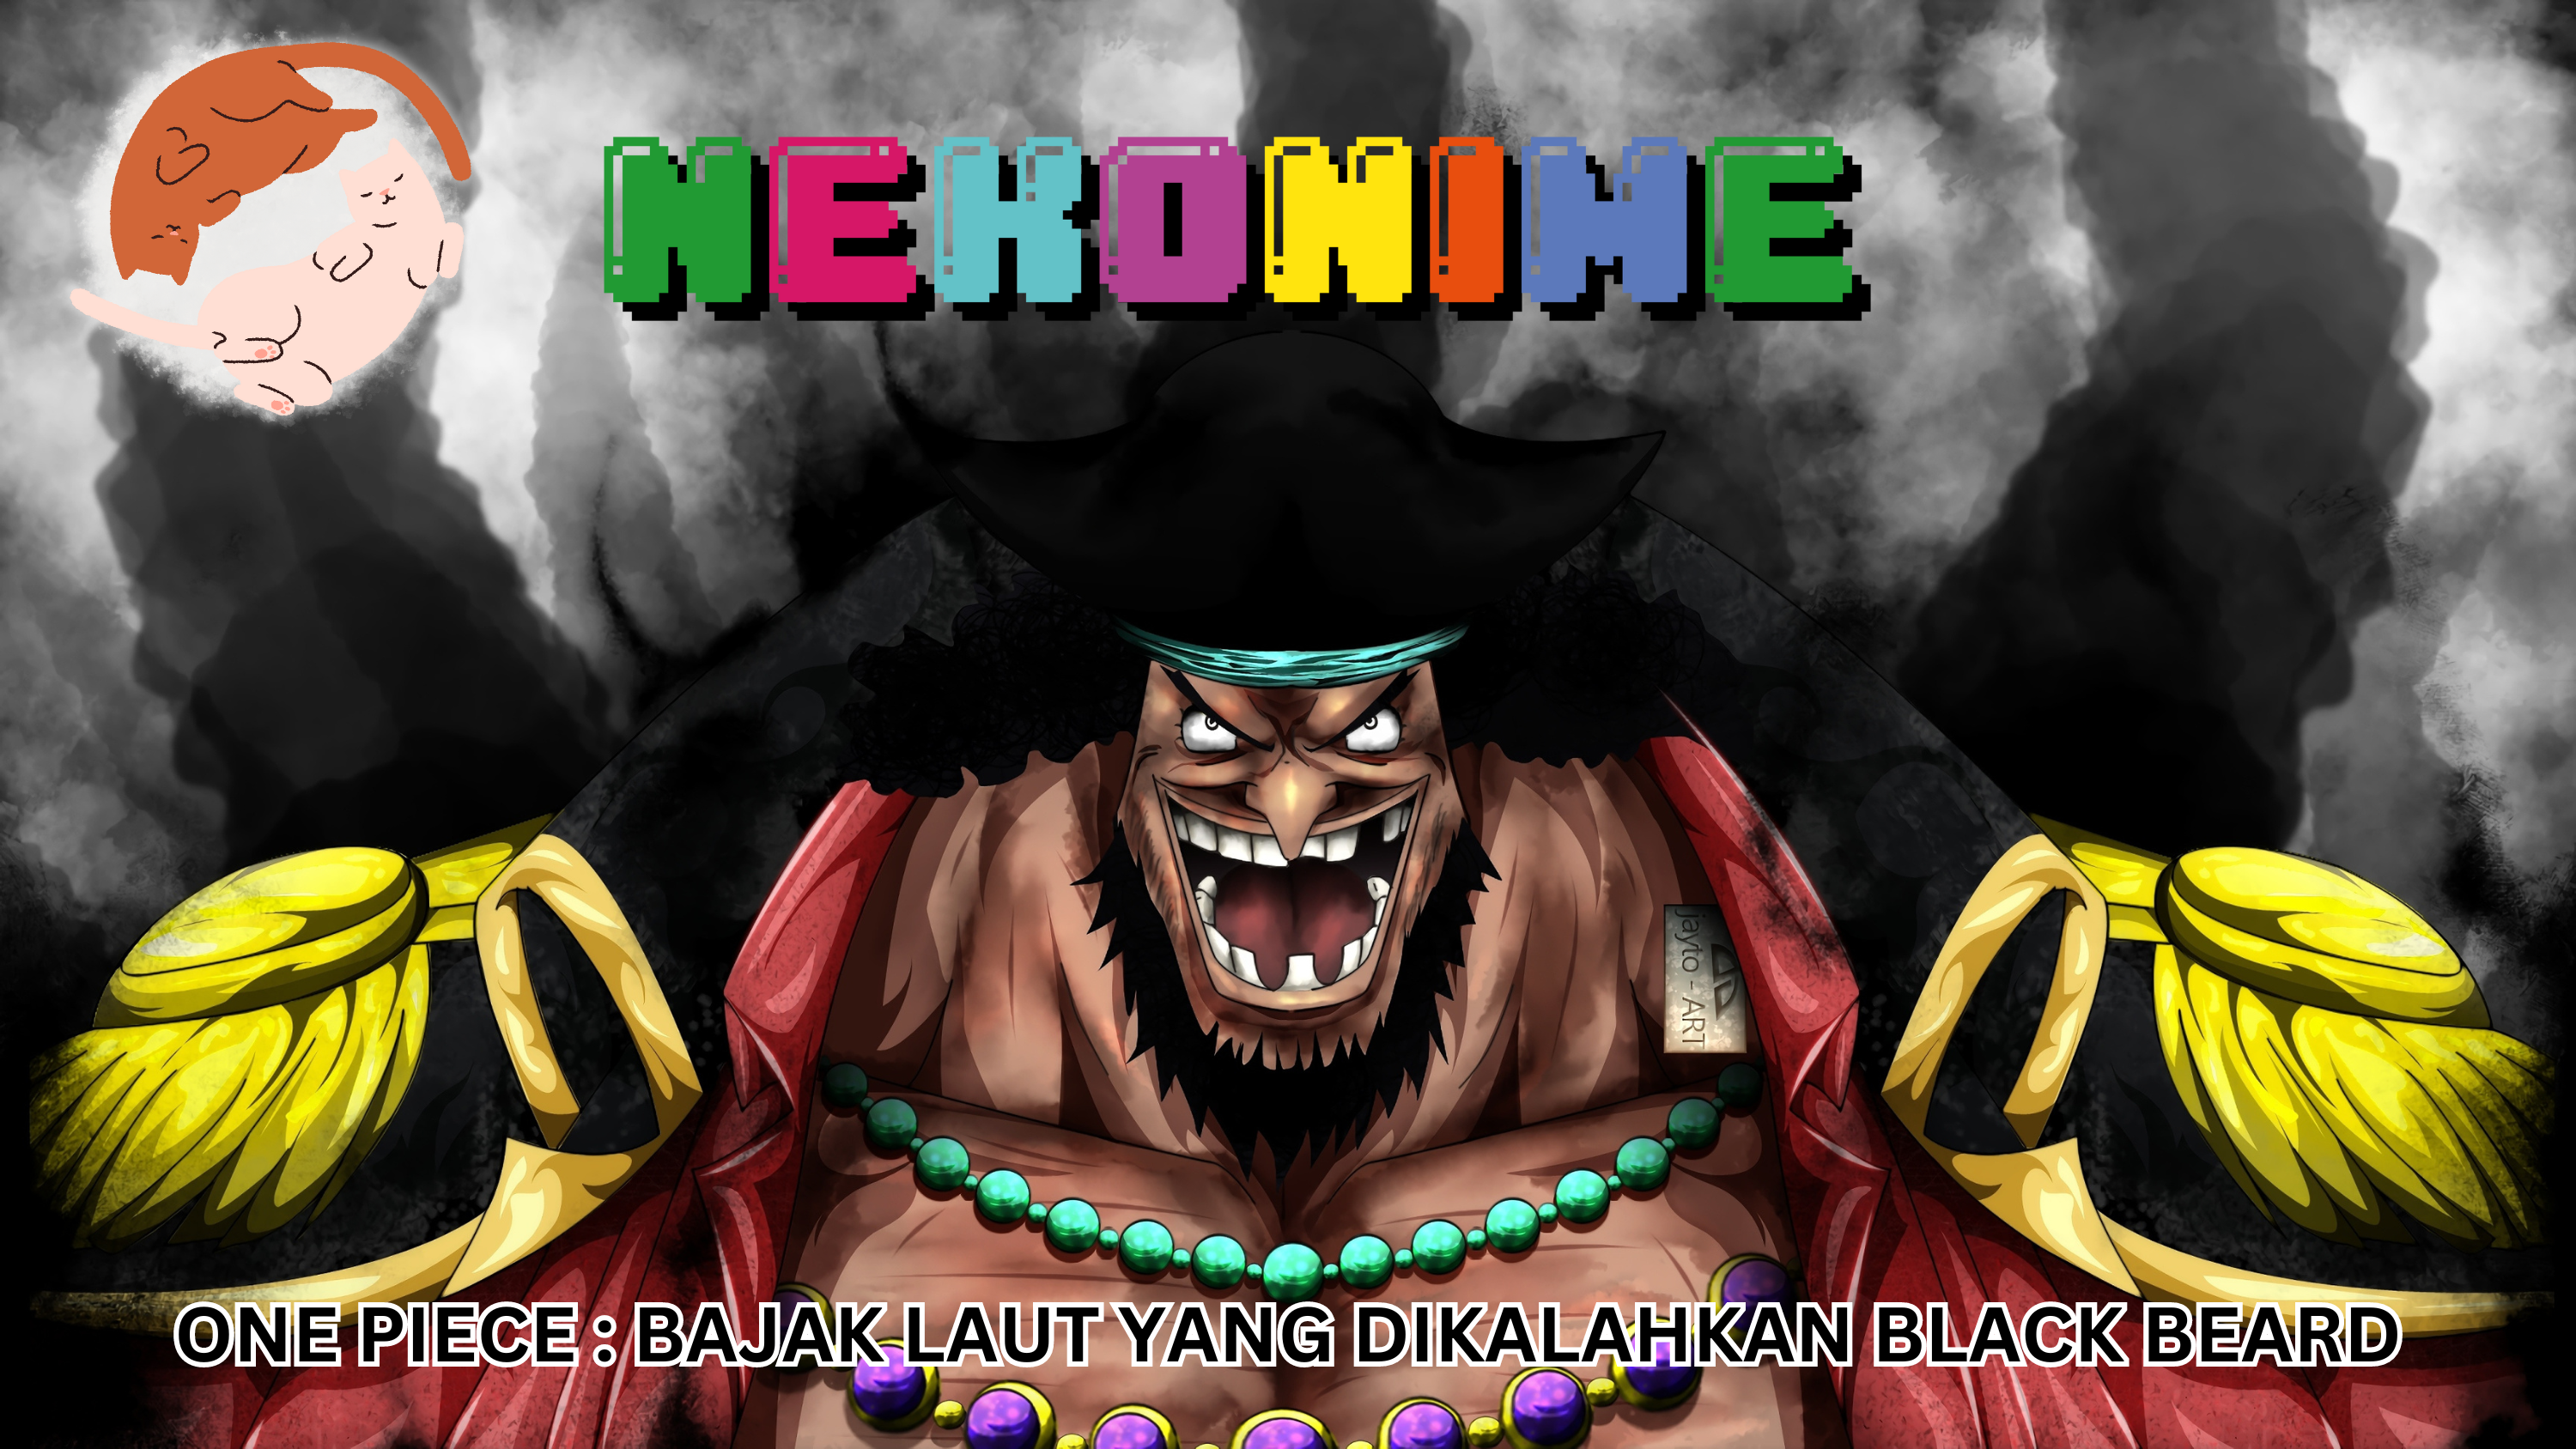 One Piece : Bajak Laut yang Dikalahkan Blackbeard